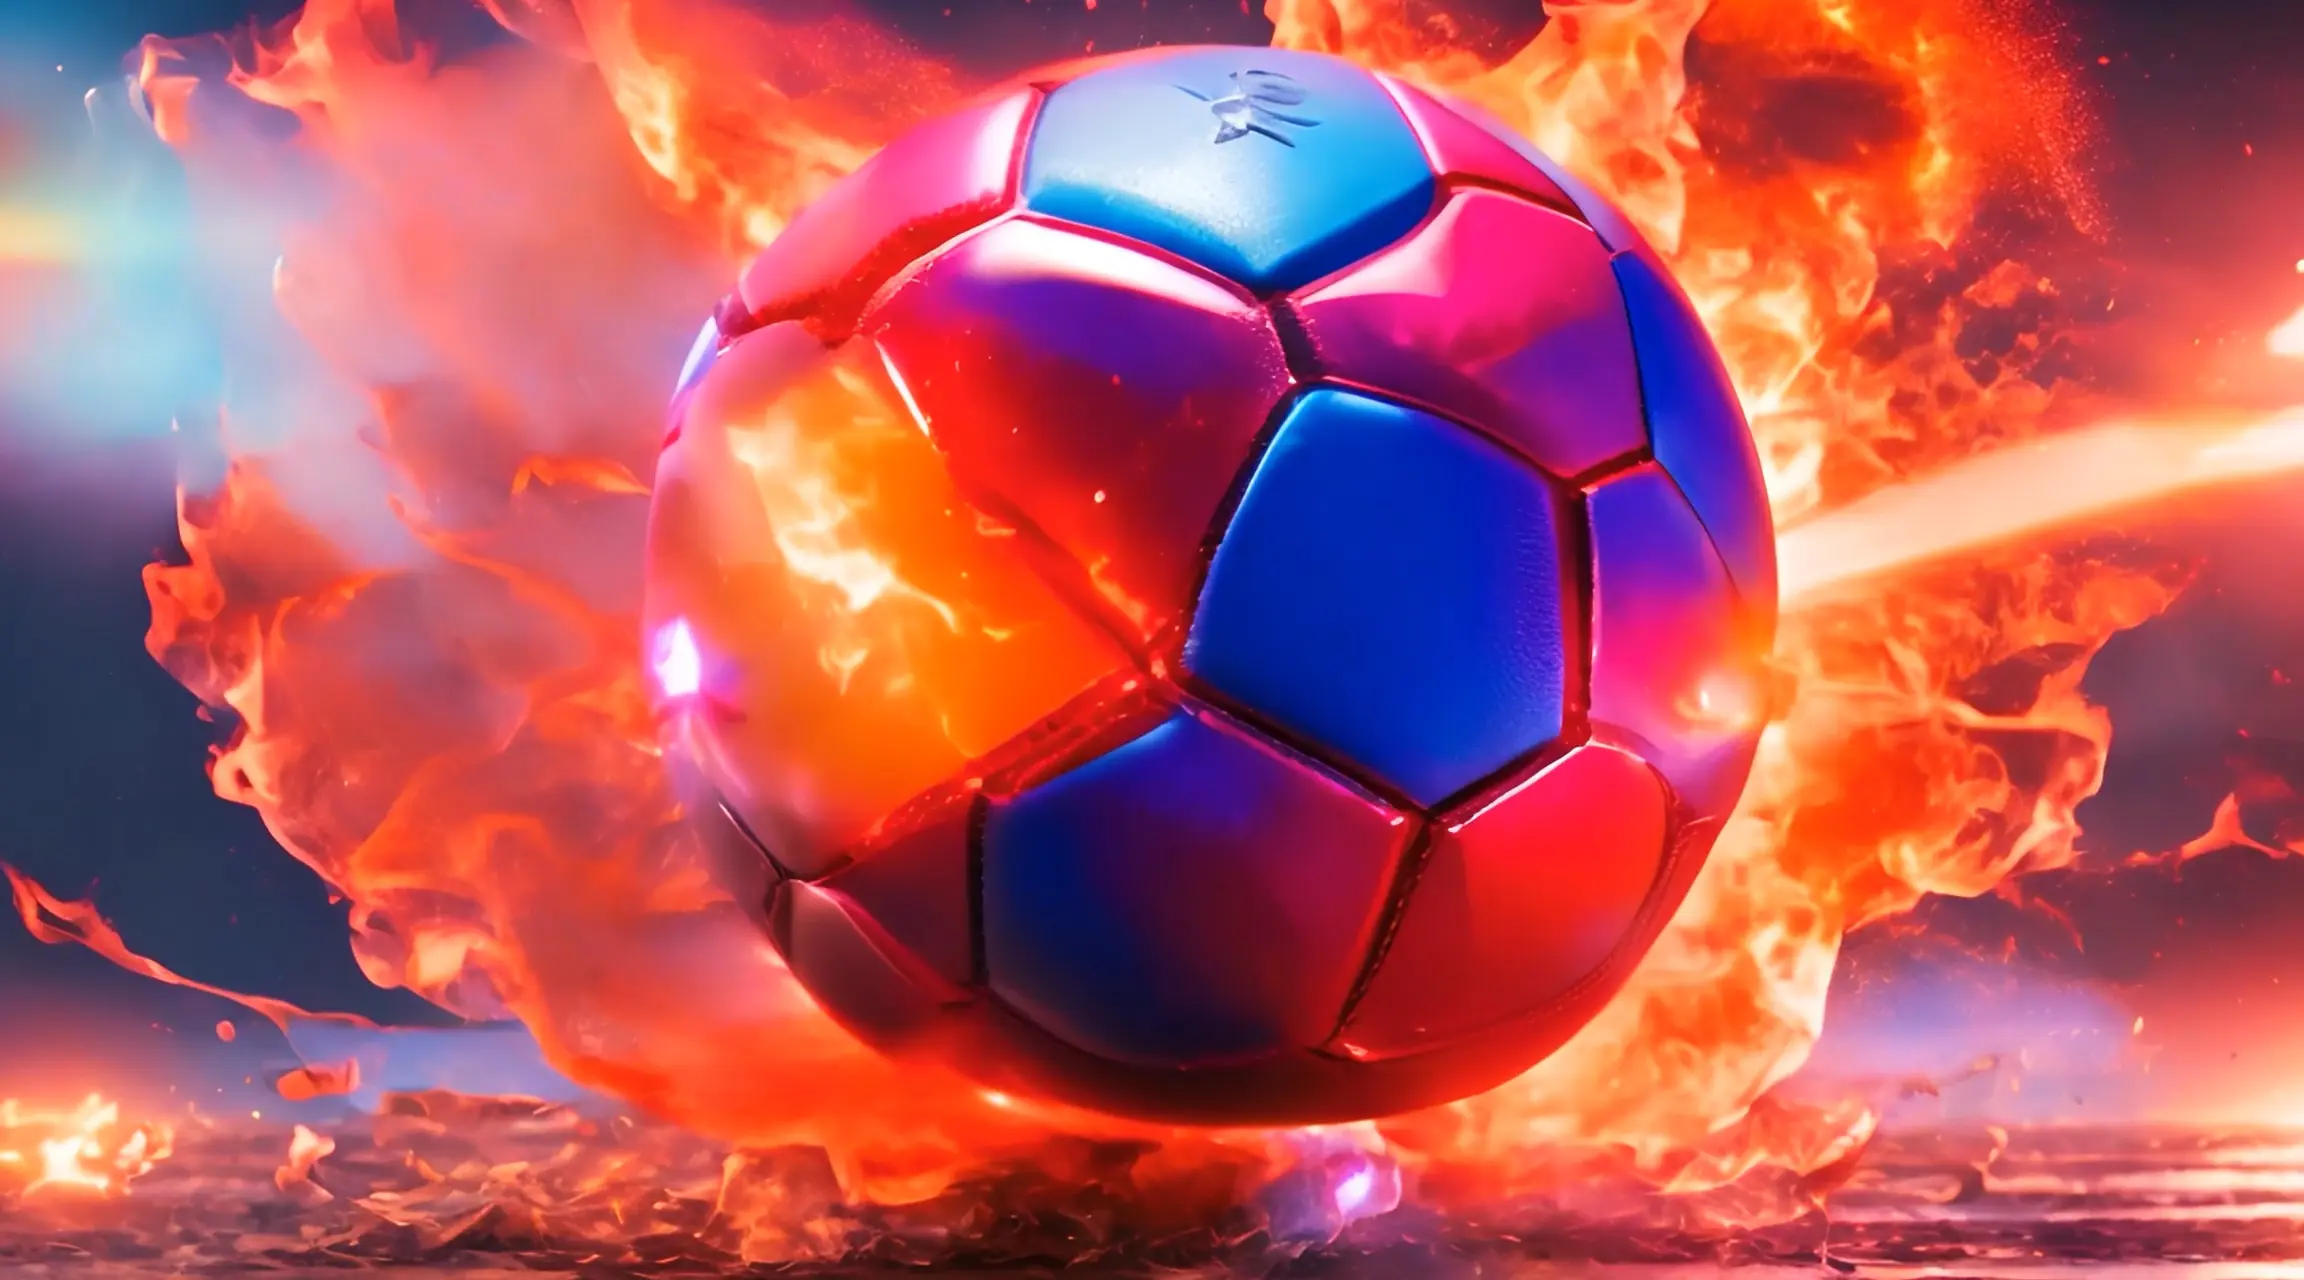 Soccer Blaze Dynamic Fire Ball Backdrop Loop